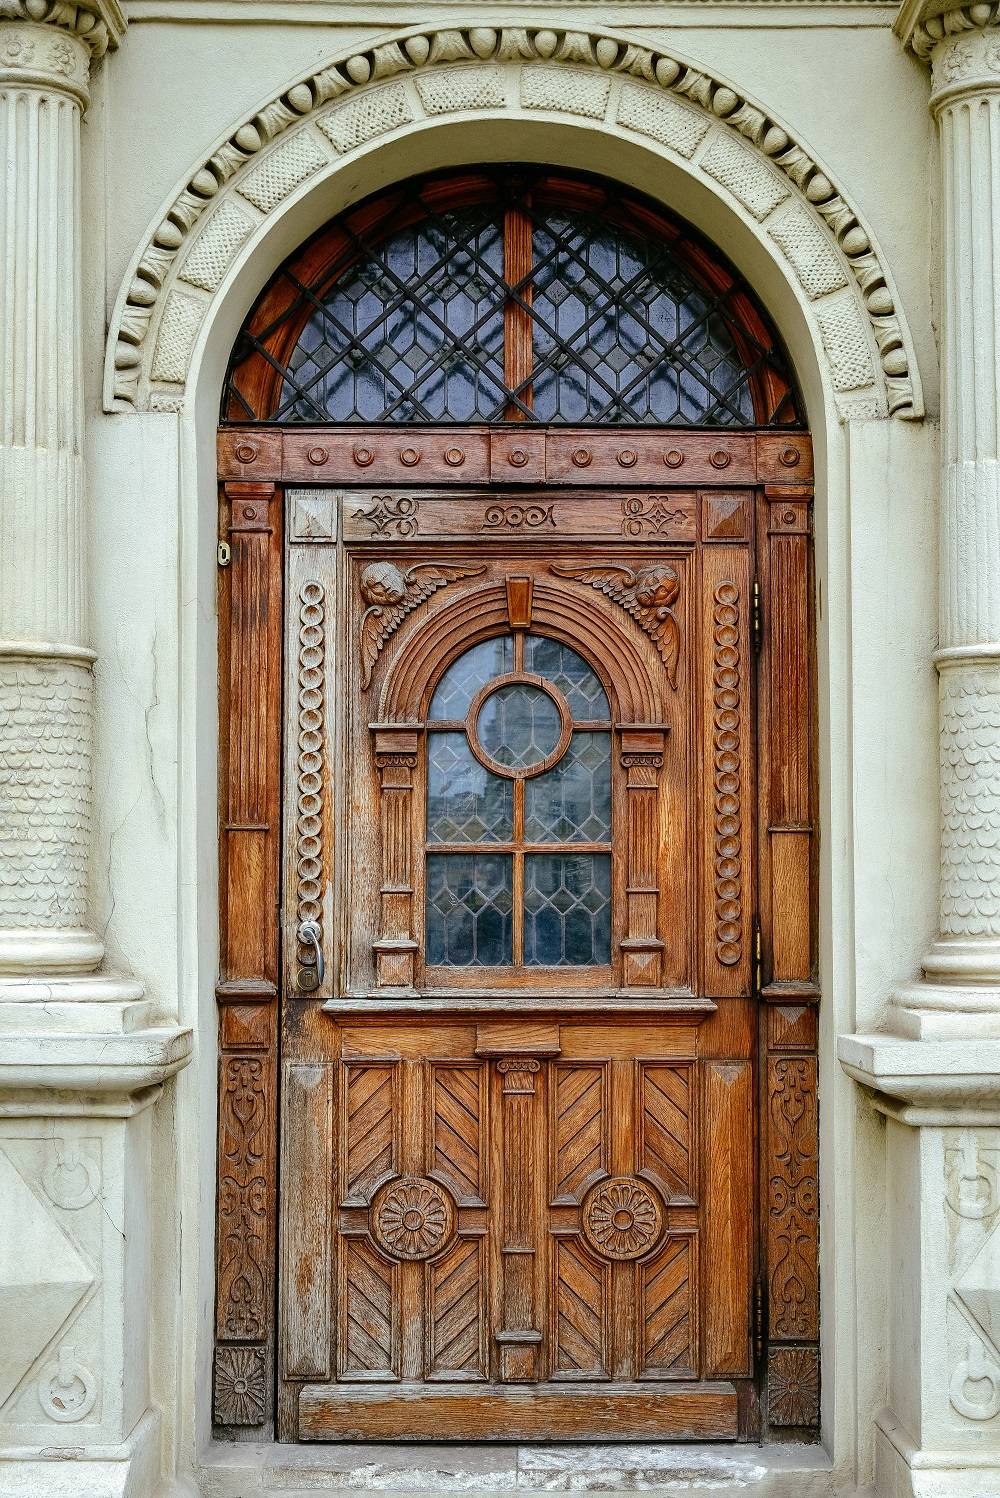 Antična, masivna lesena vrata, polna rezbarskih vzorcev, so pravo umetniško delo.